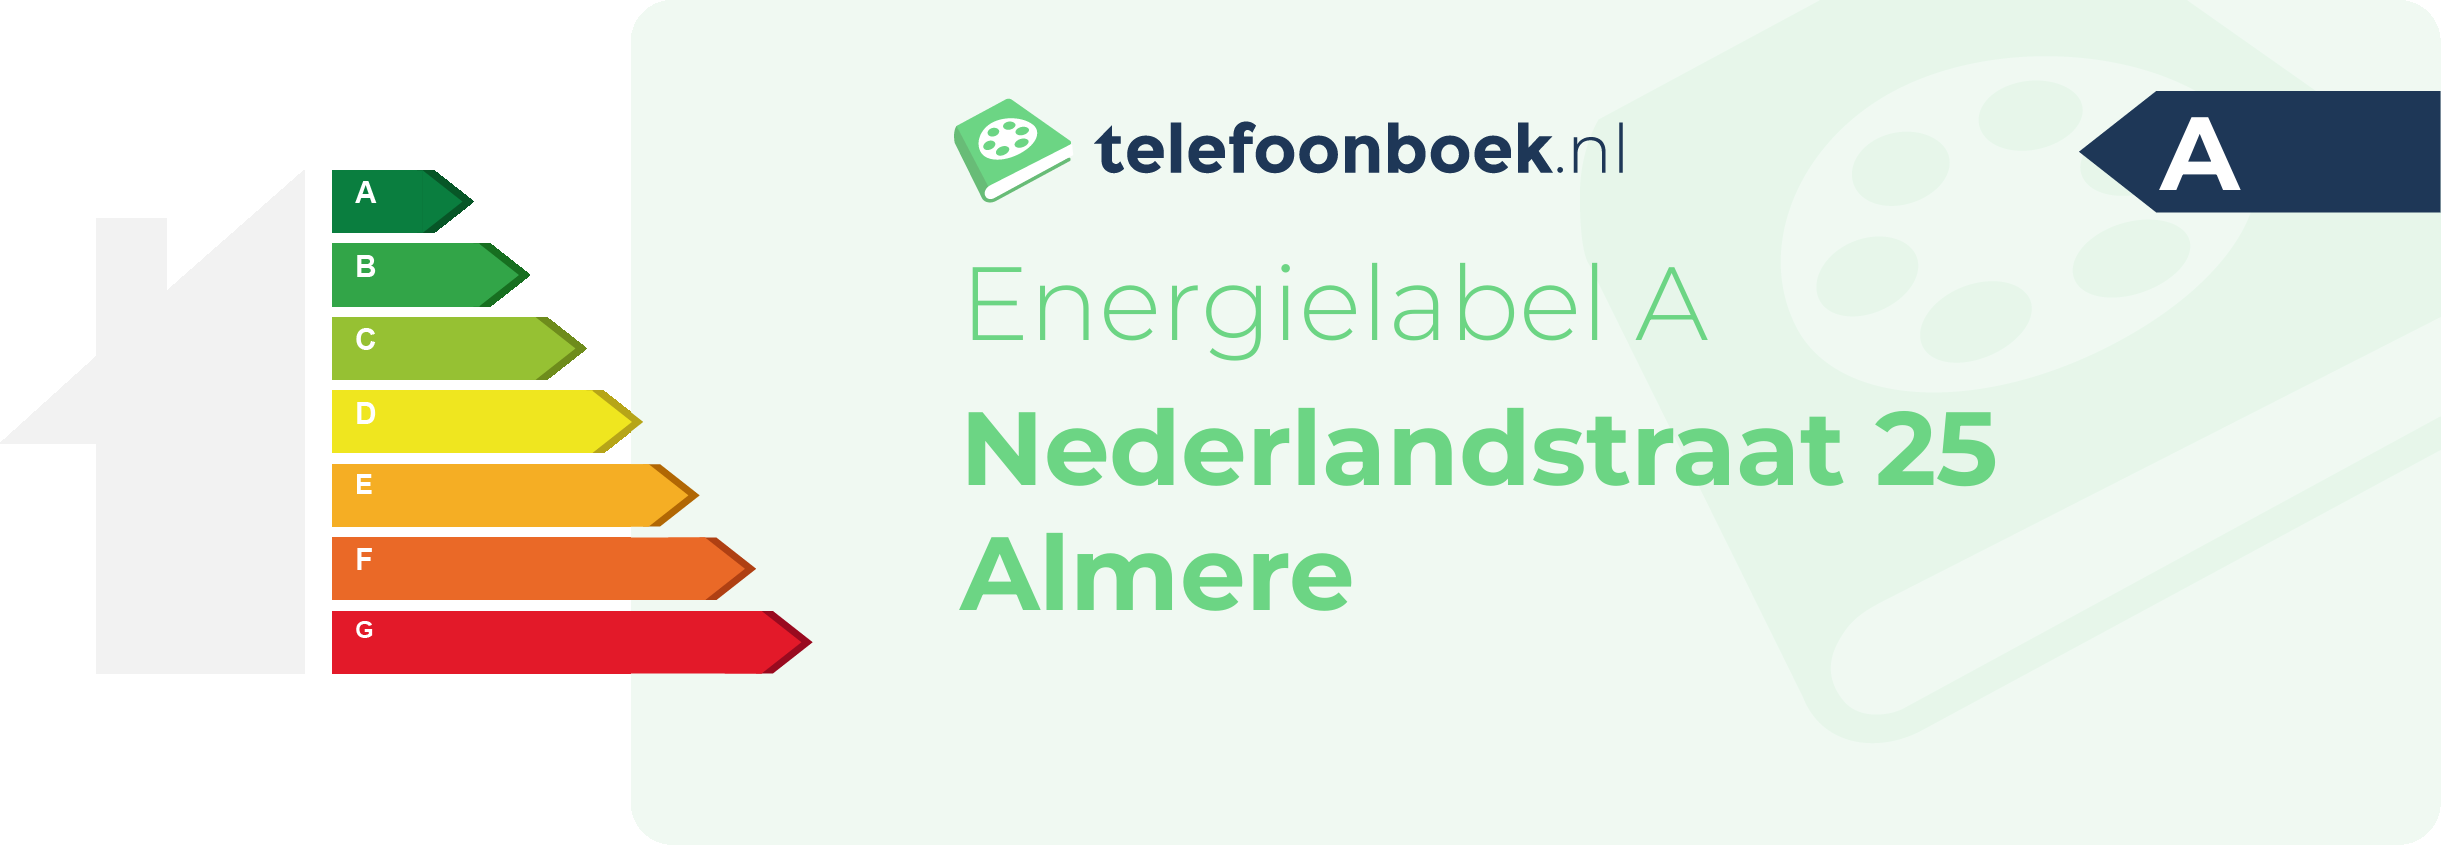 Energielabel Nederlandstraat 25 Almere